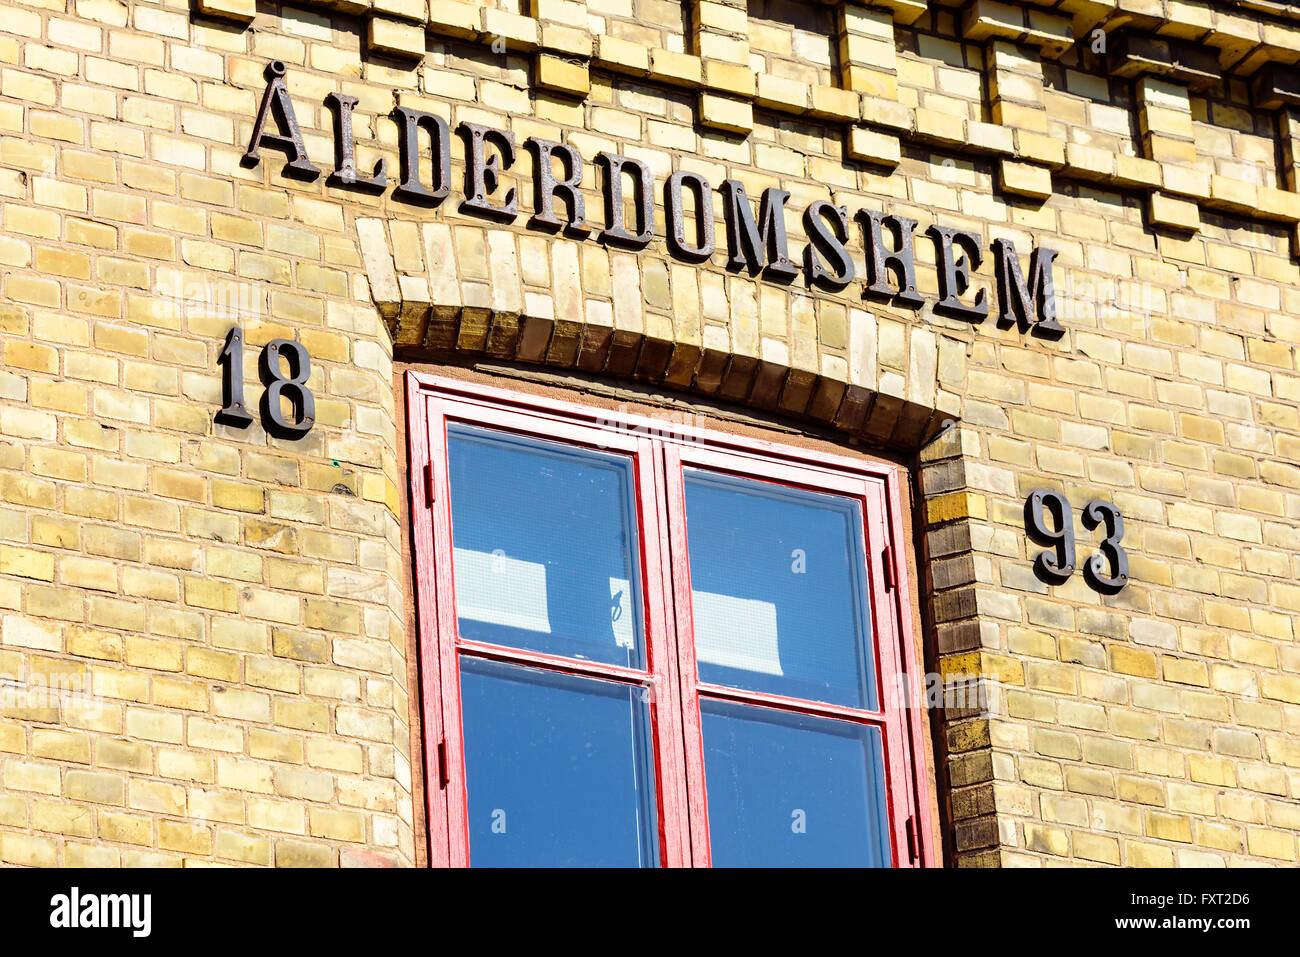 Lund, Schweden - 11. April 2016: Das alte Schild über einem Fenster eines Gebäudes aus dem Jahr 1893 sagt Altersheim in schwedischer Sprache. Stockfoto